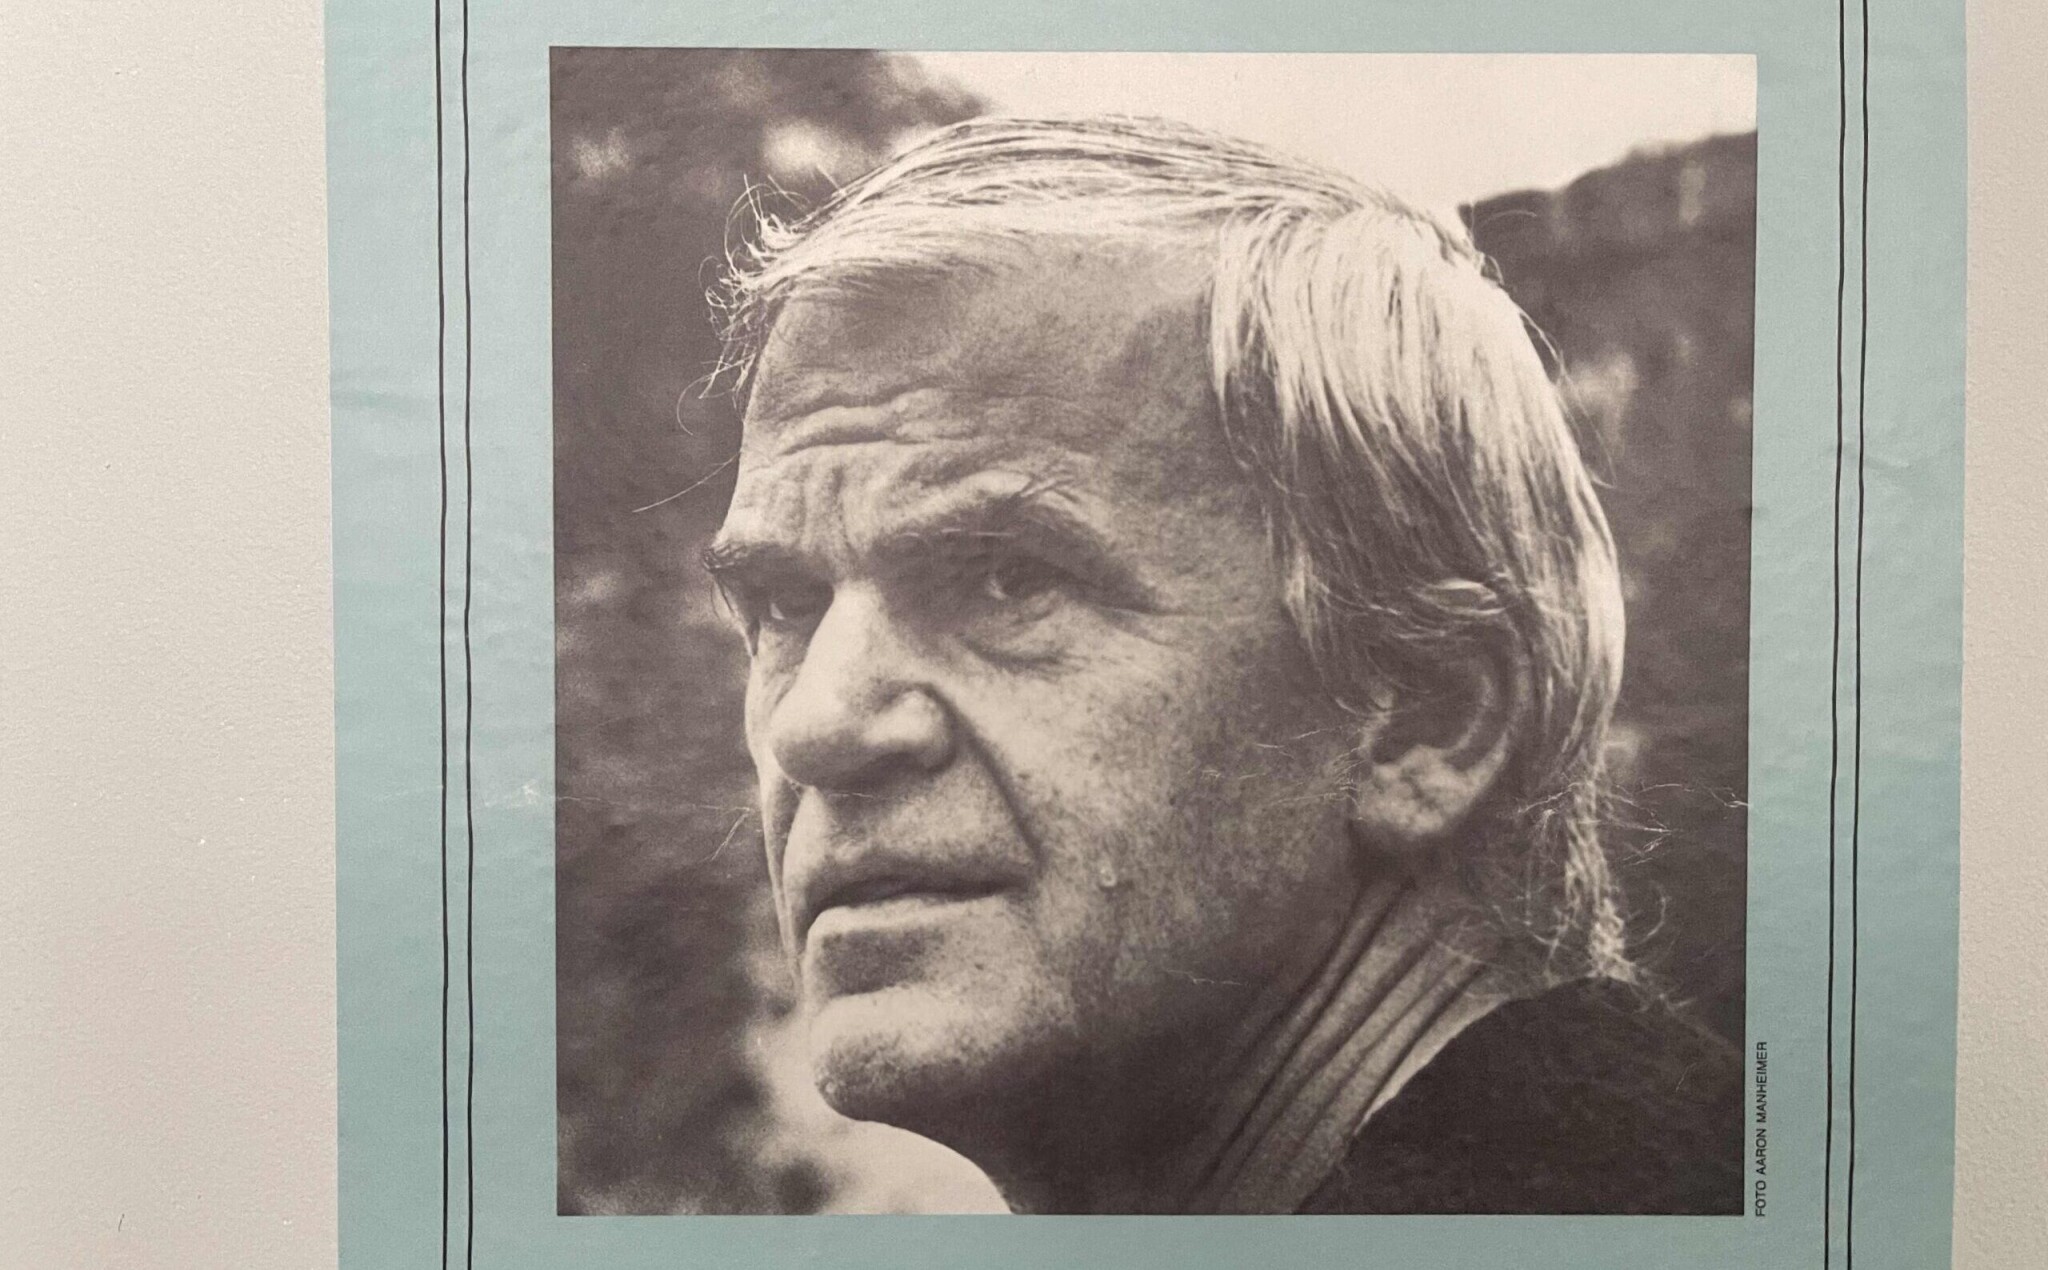 Zomrel Milan Kundera. Jeden z najslávnejších a najprekladanejších spisovateľov z Česka